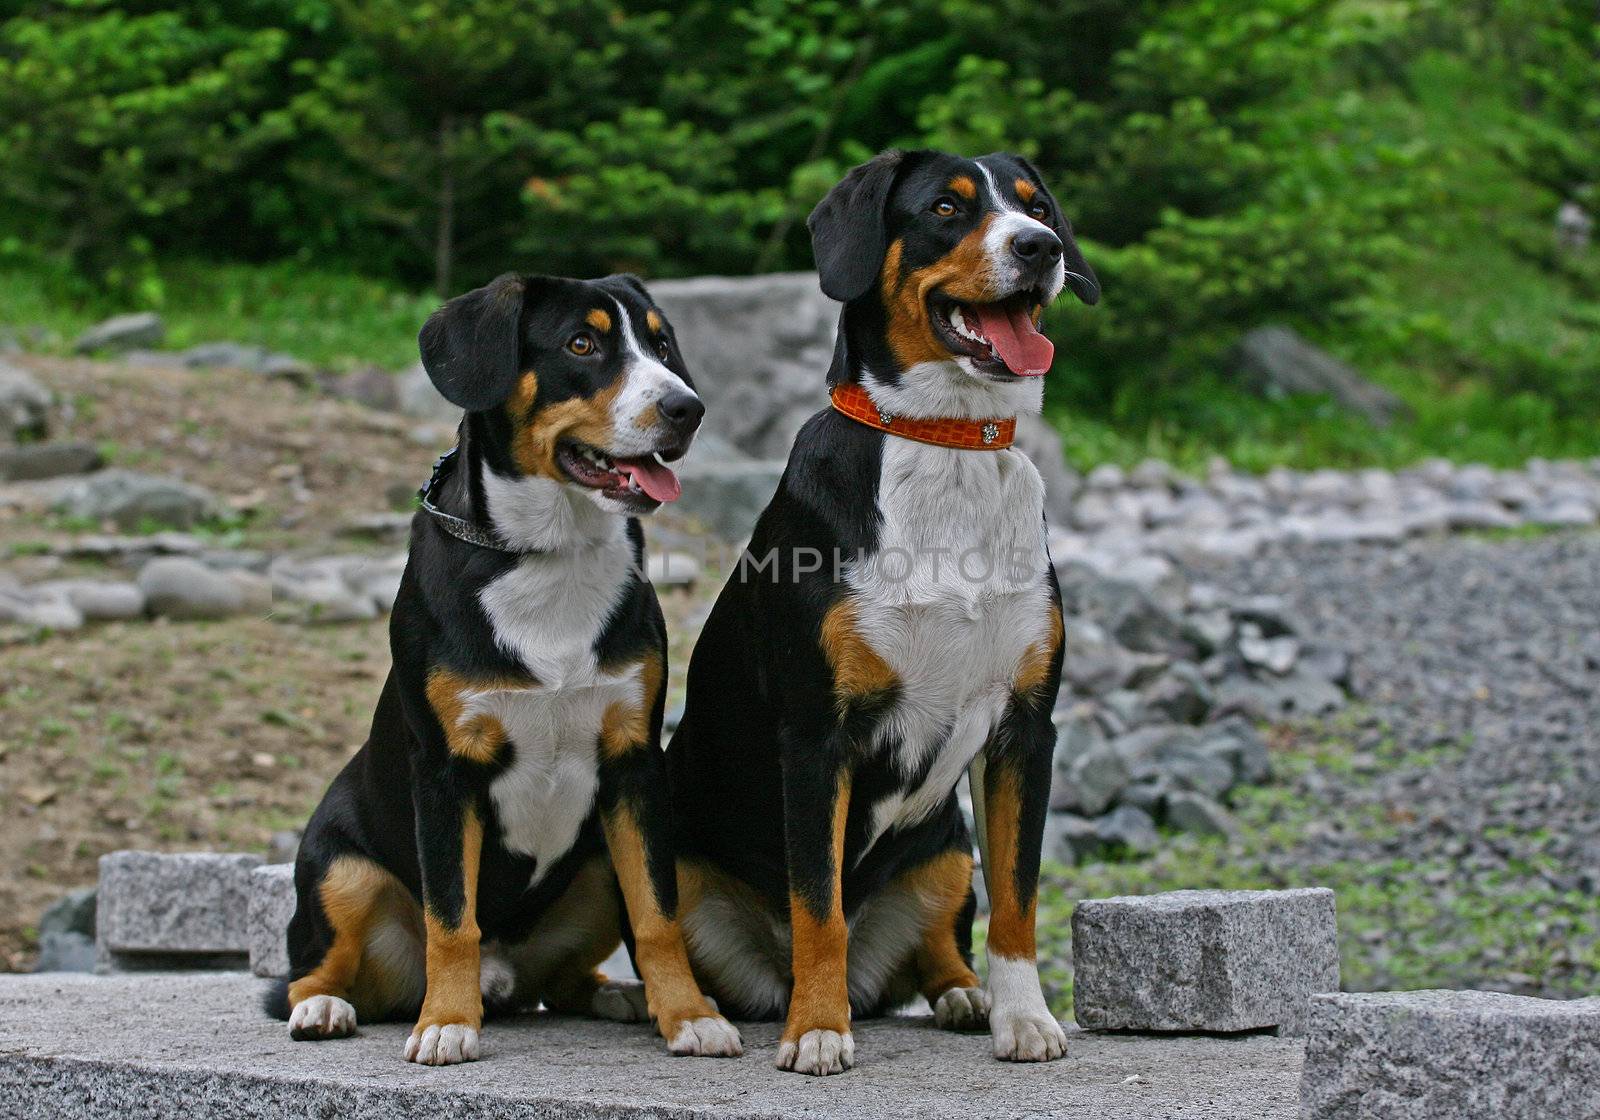 Two Entlebucher Sennenhund dogs